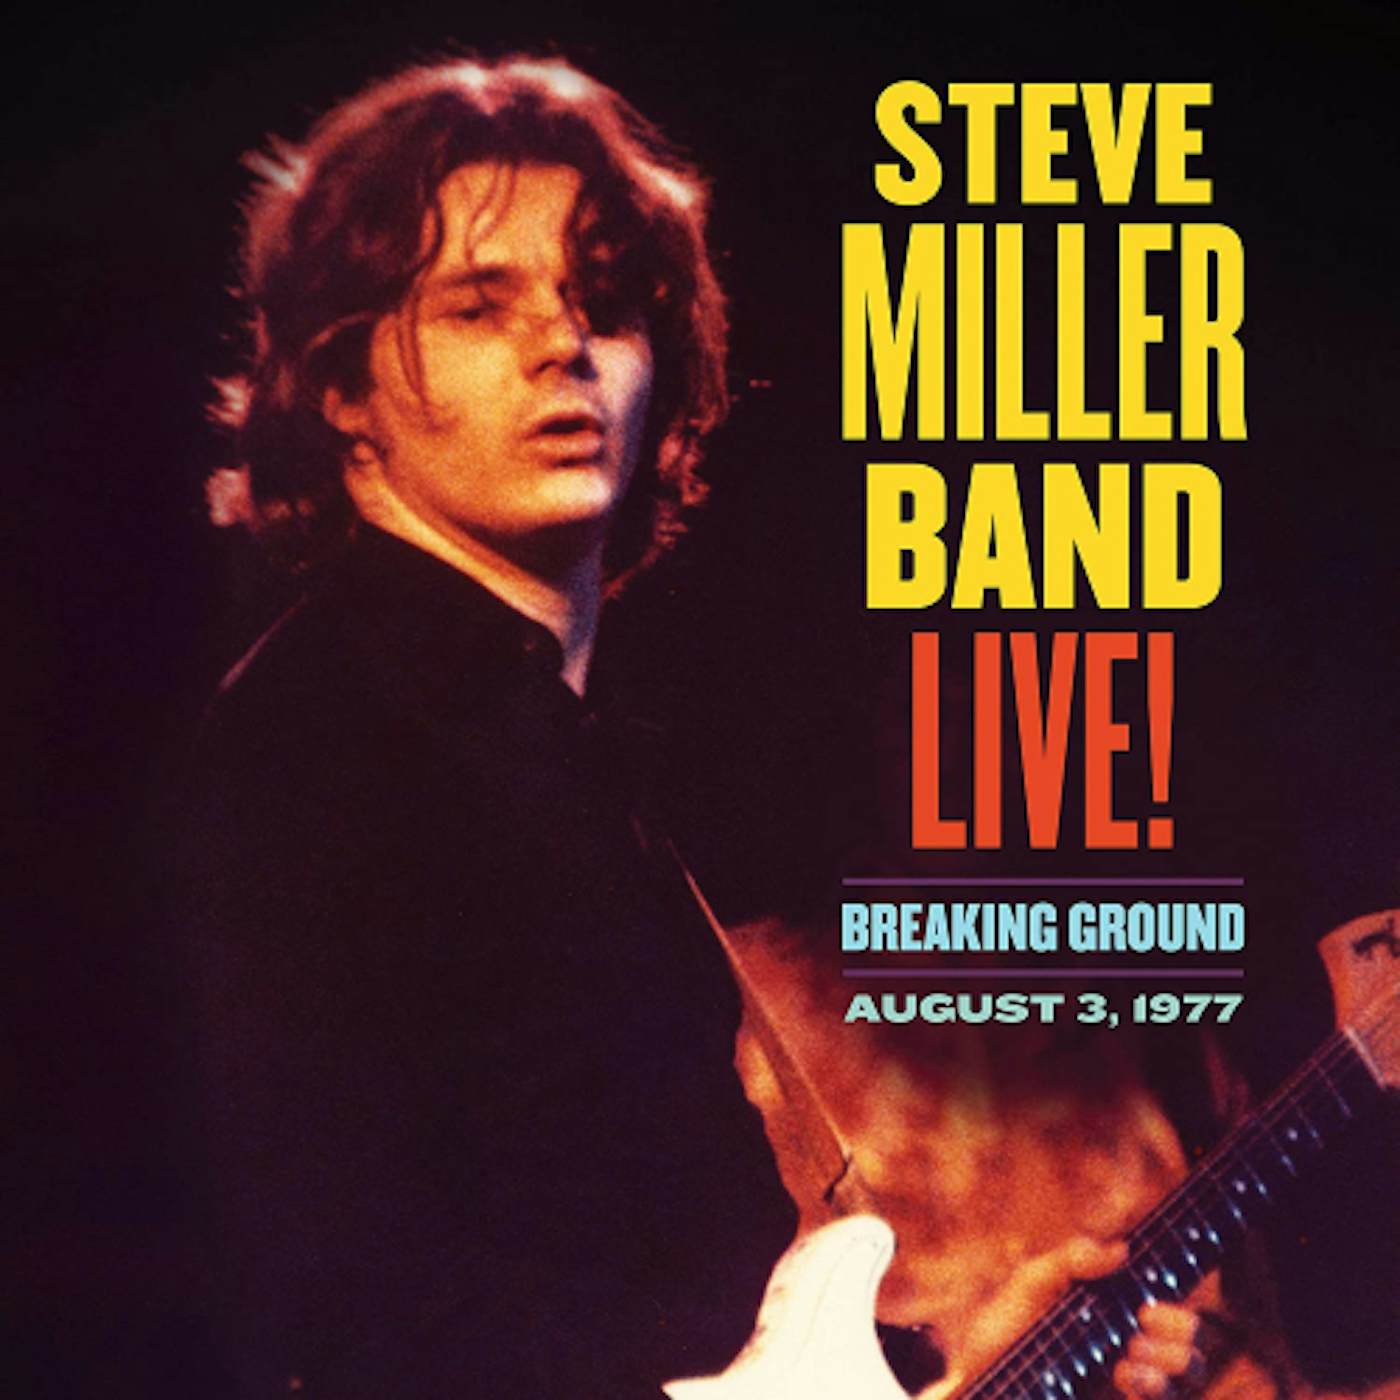 Steve Miller Band LIVE BREAKING GROUND AUGUST 3 1977 CD